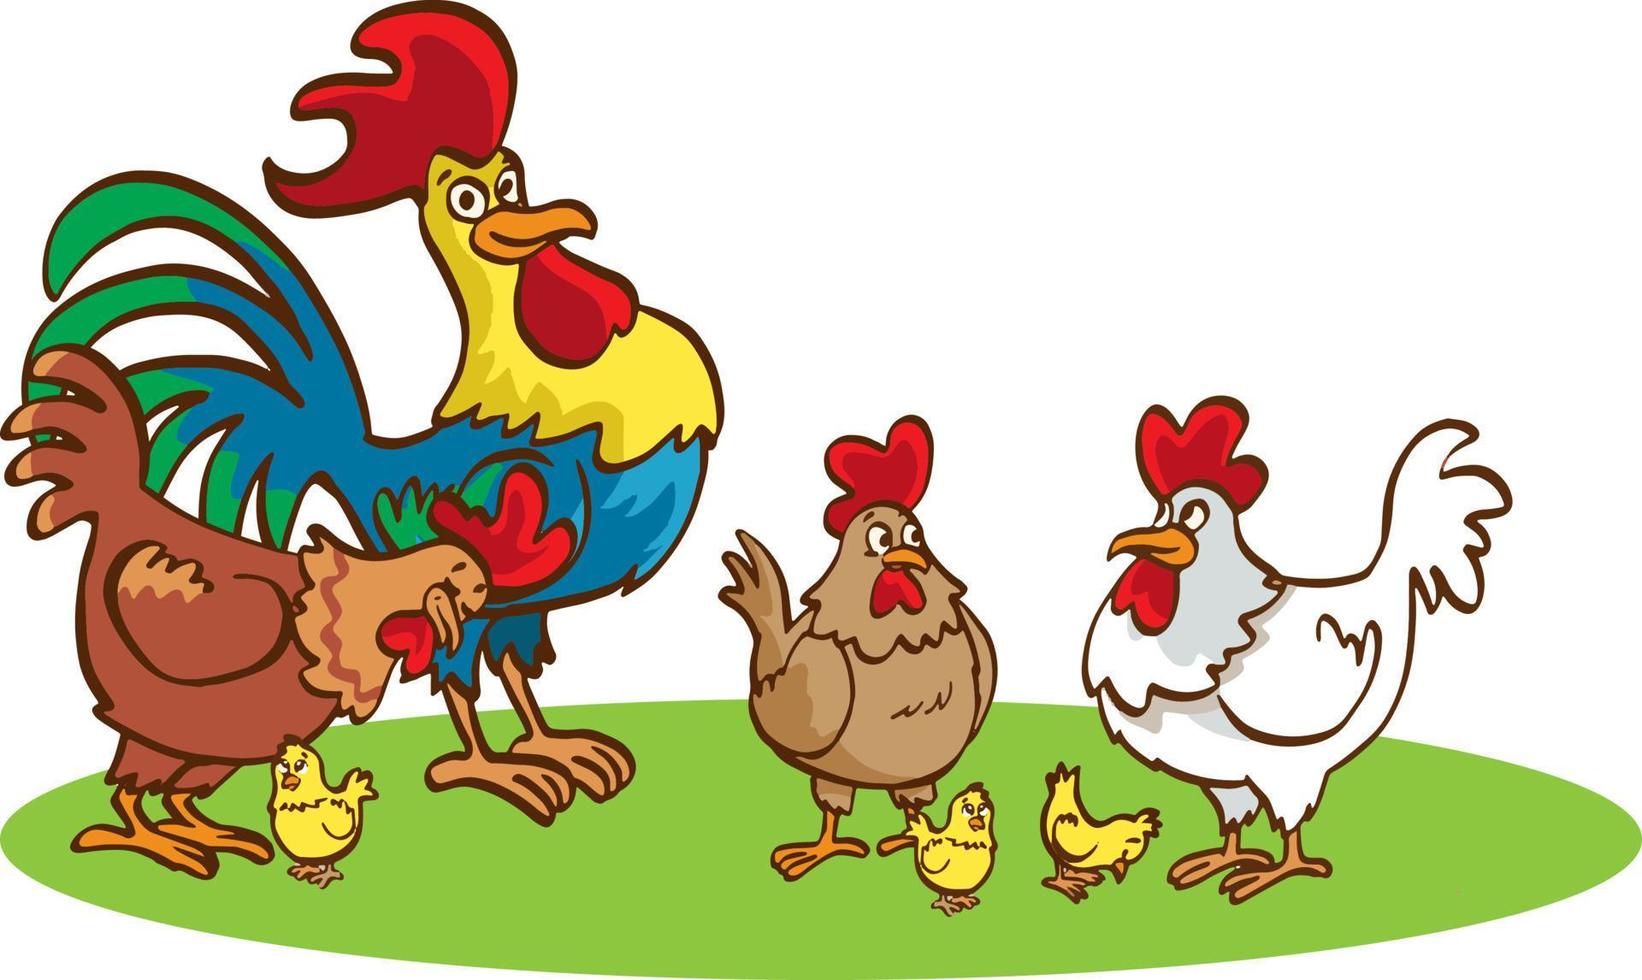 gallina adulta y gallo con pollos sobre un fondo blanco. linda familia de pollos con sus pollos al estilo de las caricaturas. vector